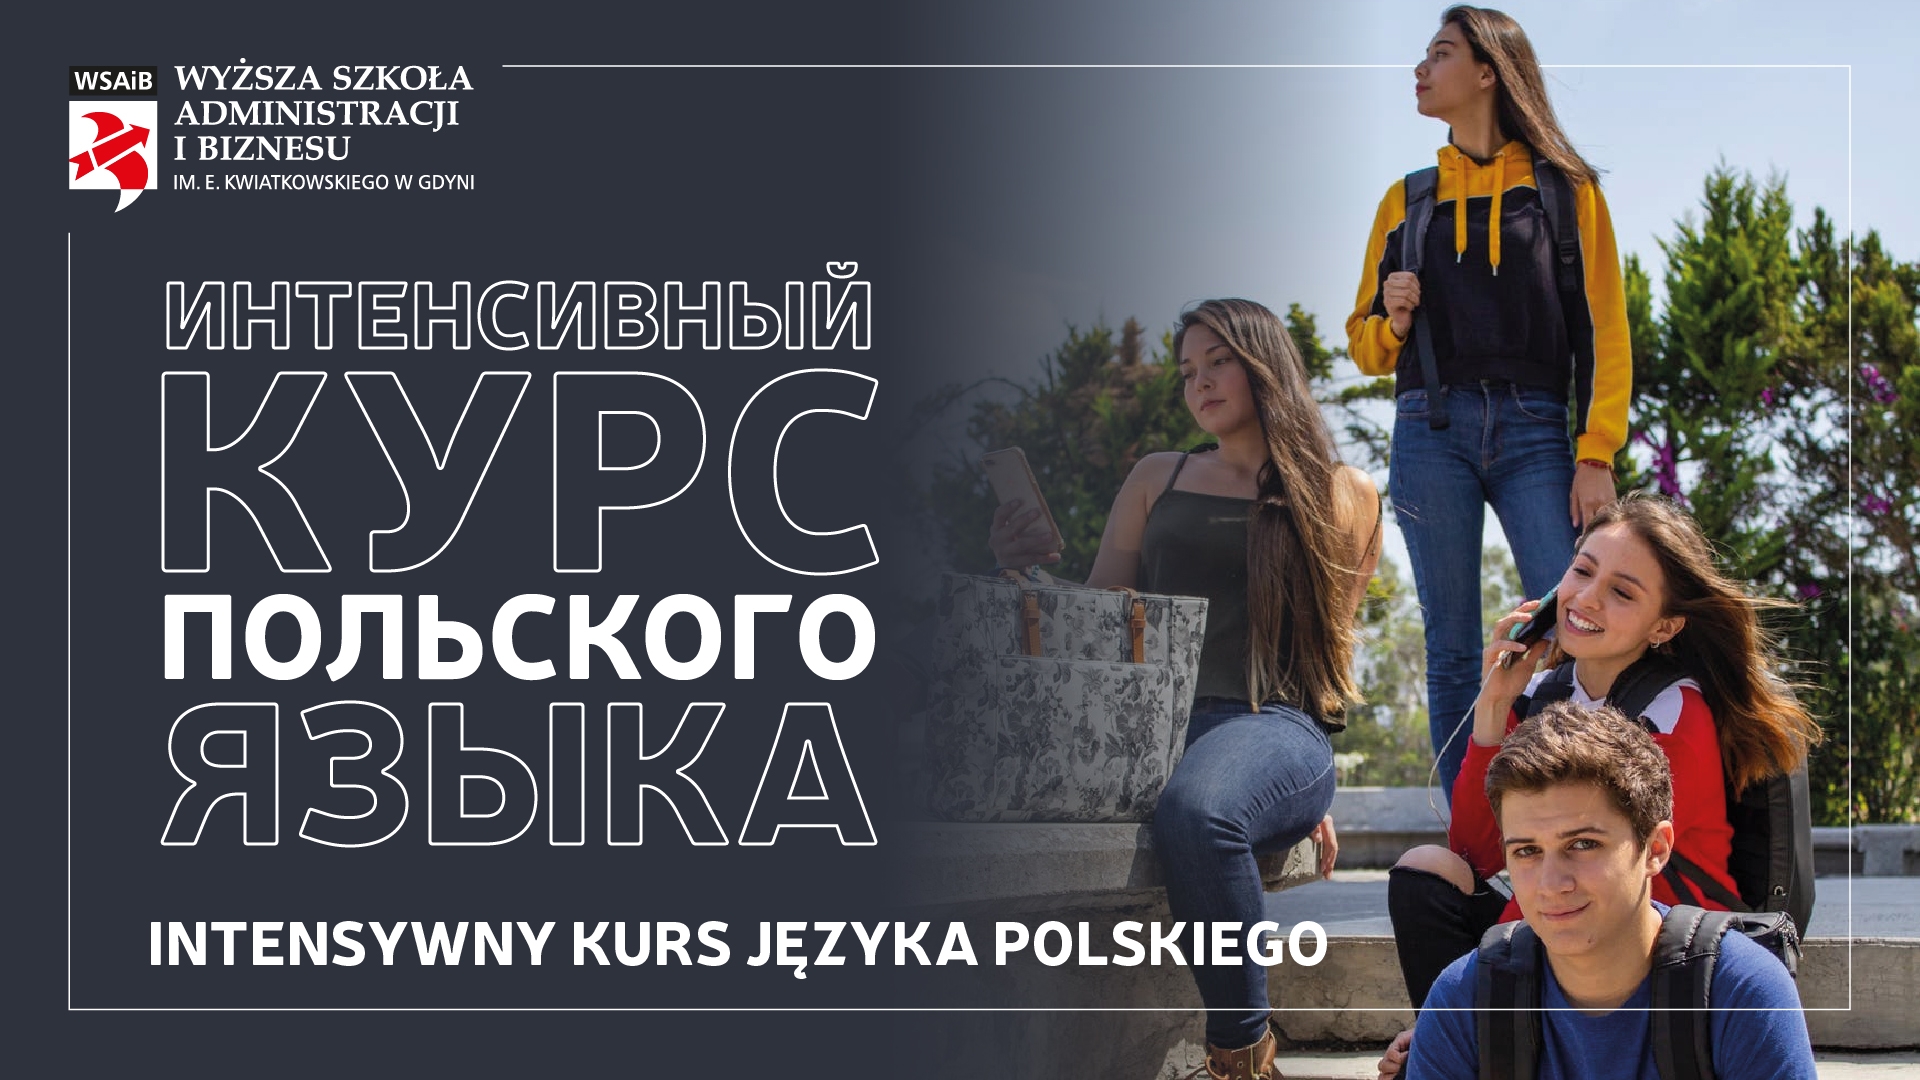 KURS JĘZYKA POLSKIEGO 2021- курс польского языка